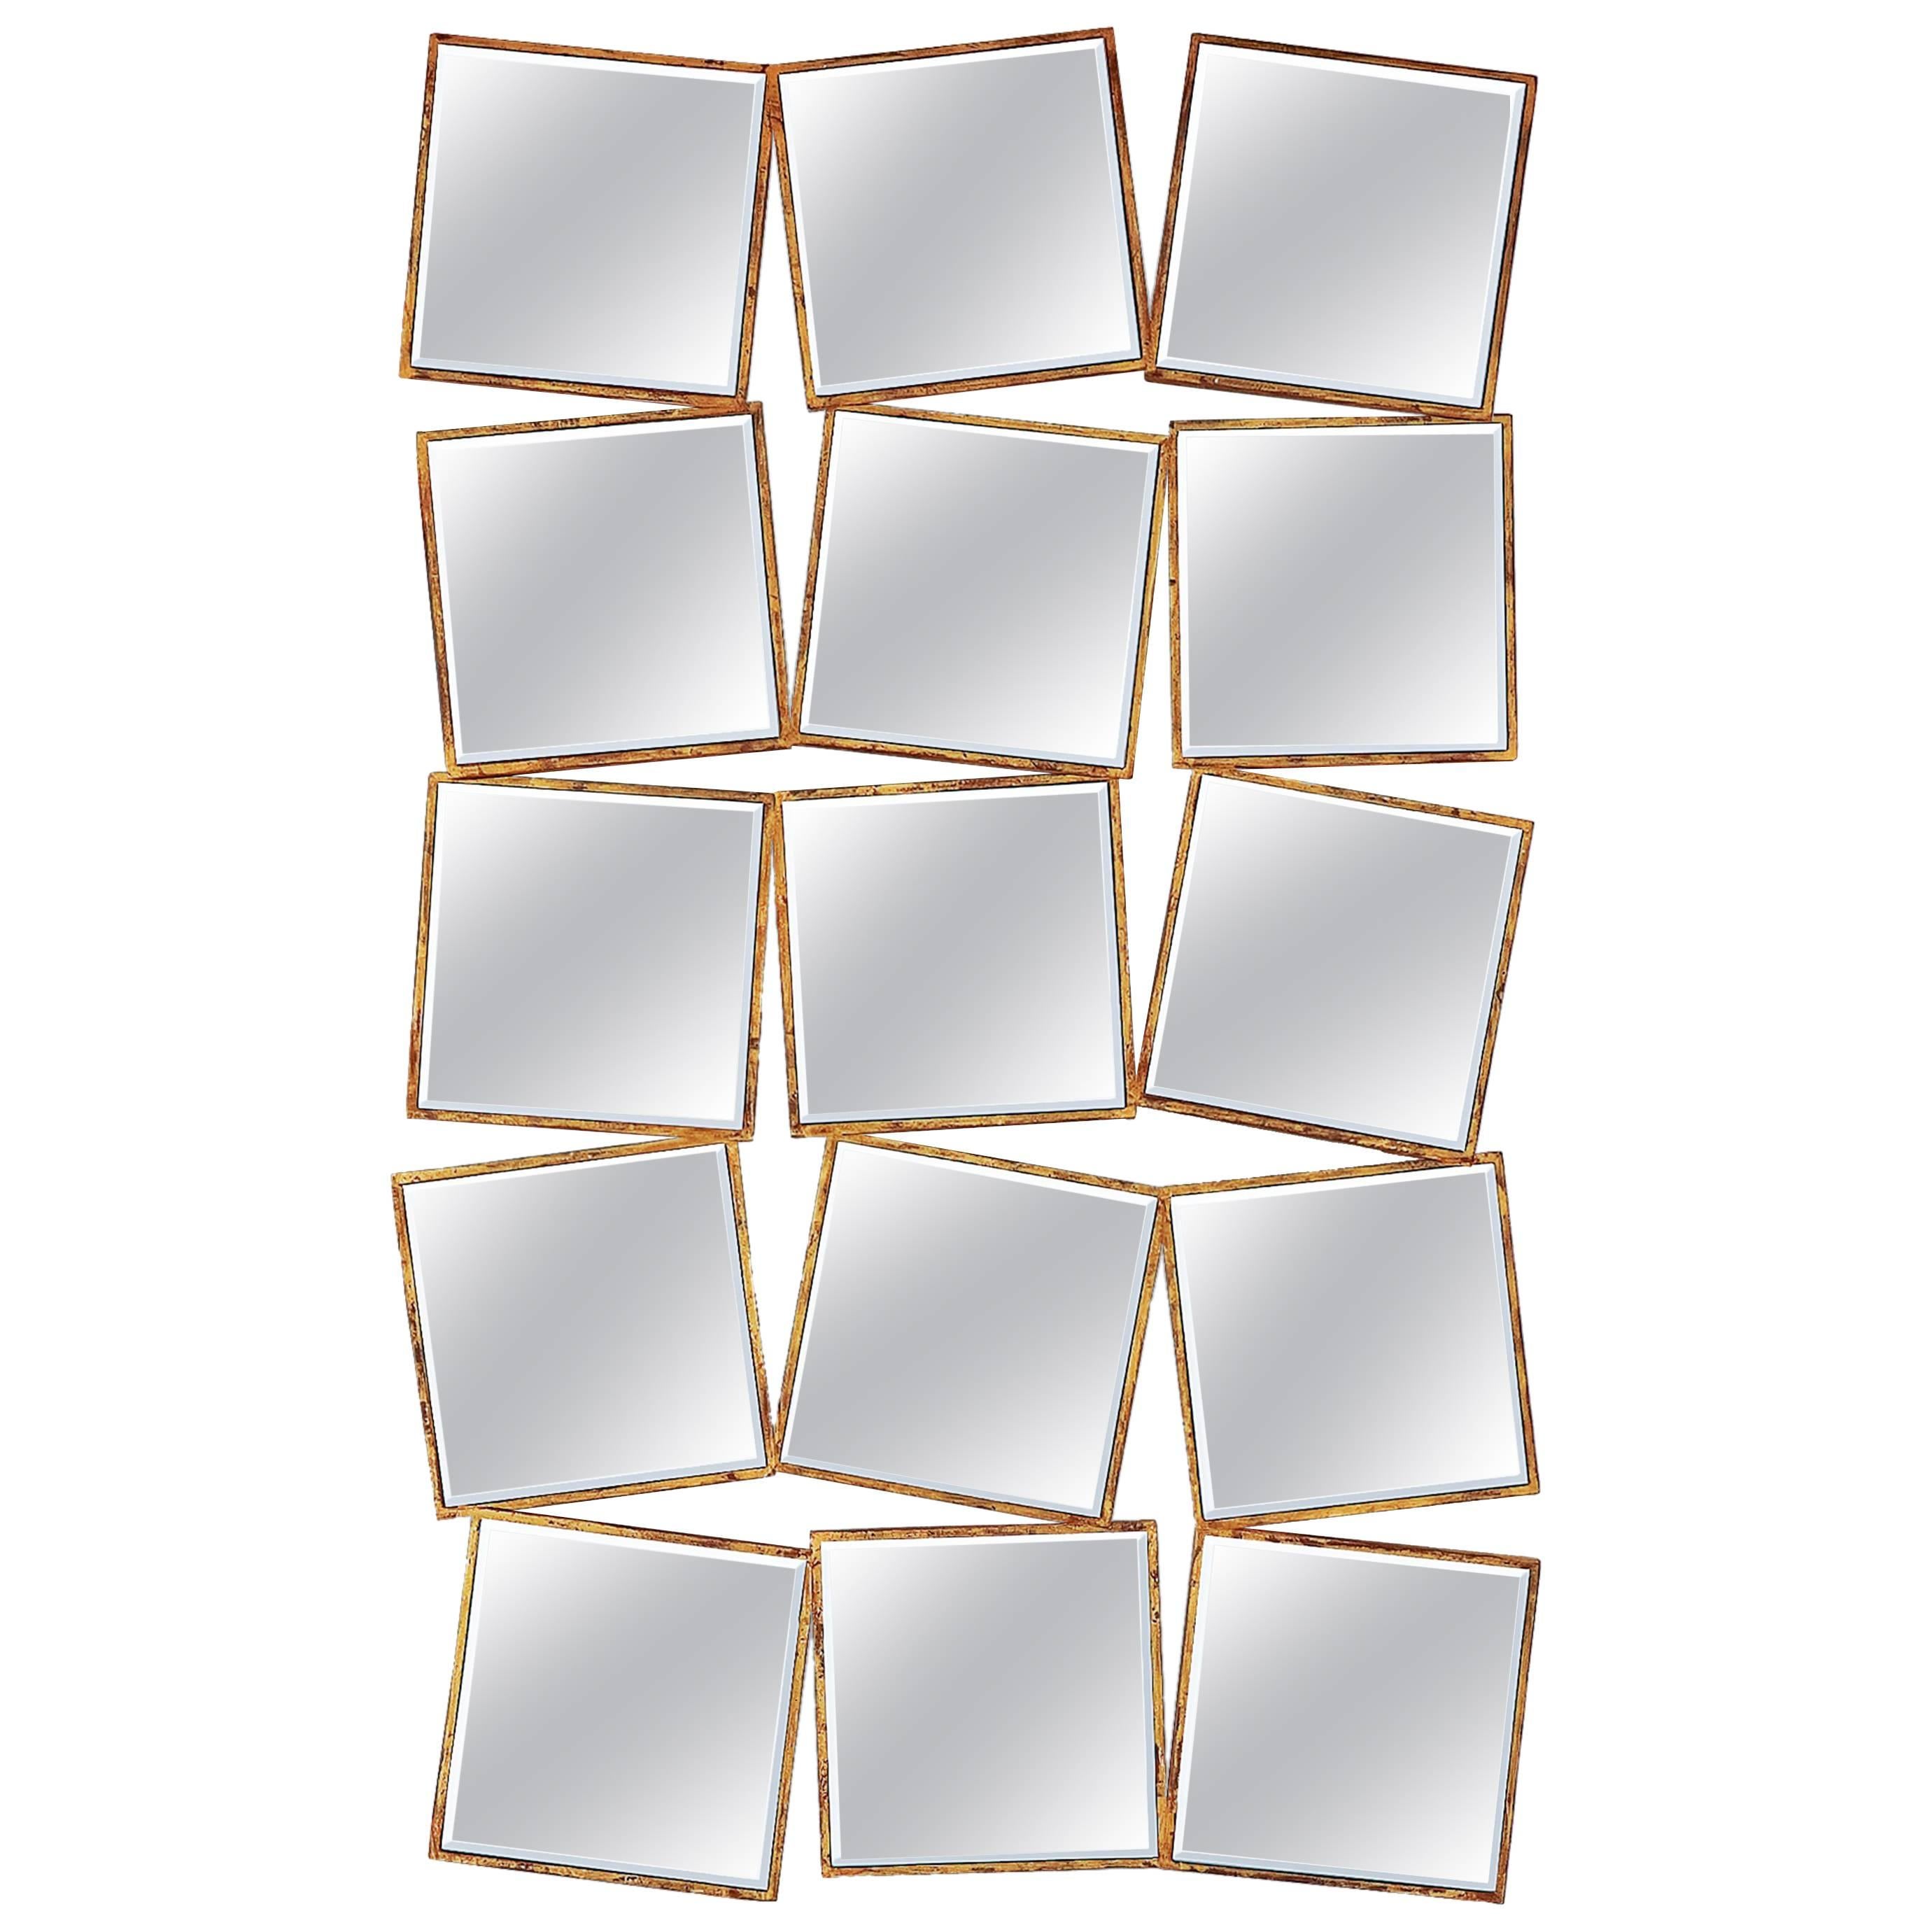 15. Quadratischer Spiegel mit Massivholzrahmen und Goldmalerei